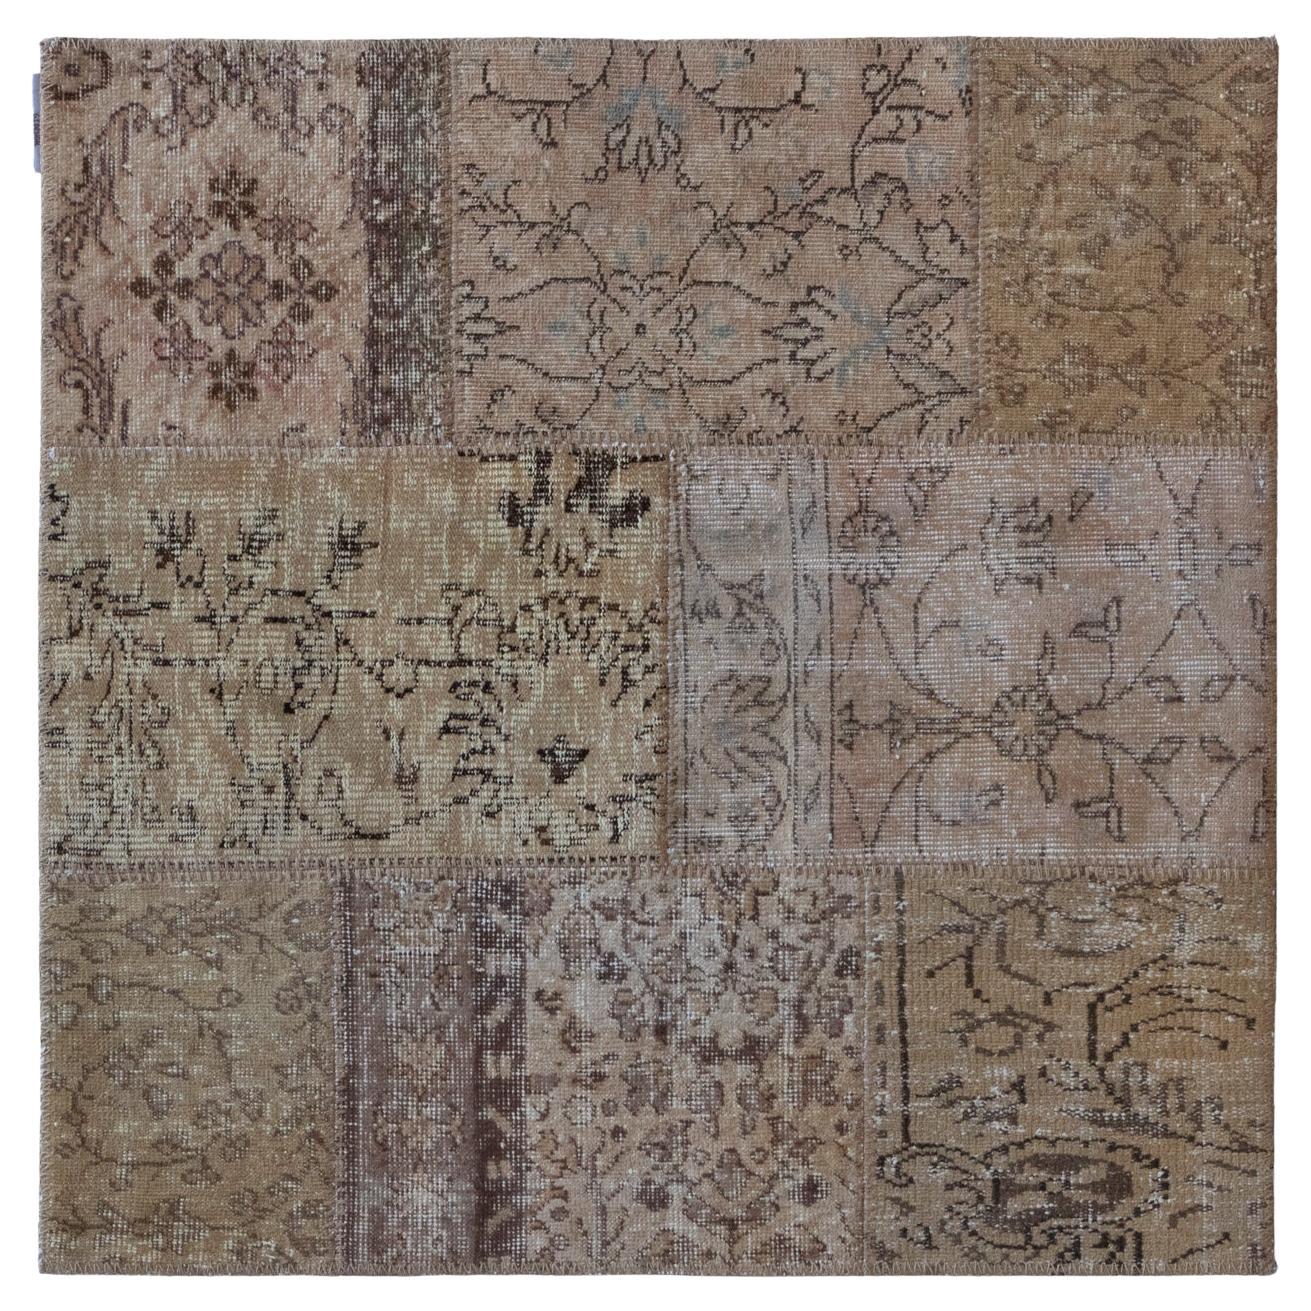 Tapis en laine et coton à motifs inspirés de la nature par Deanna Comellini, 120 x 120 cm